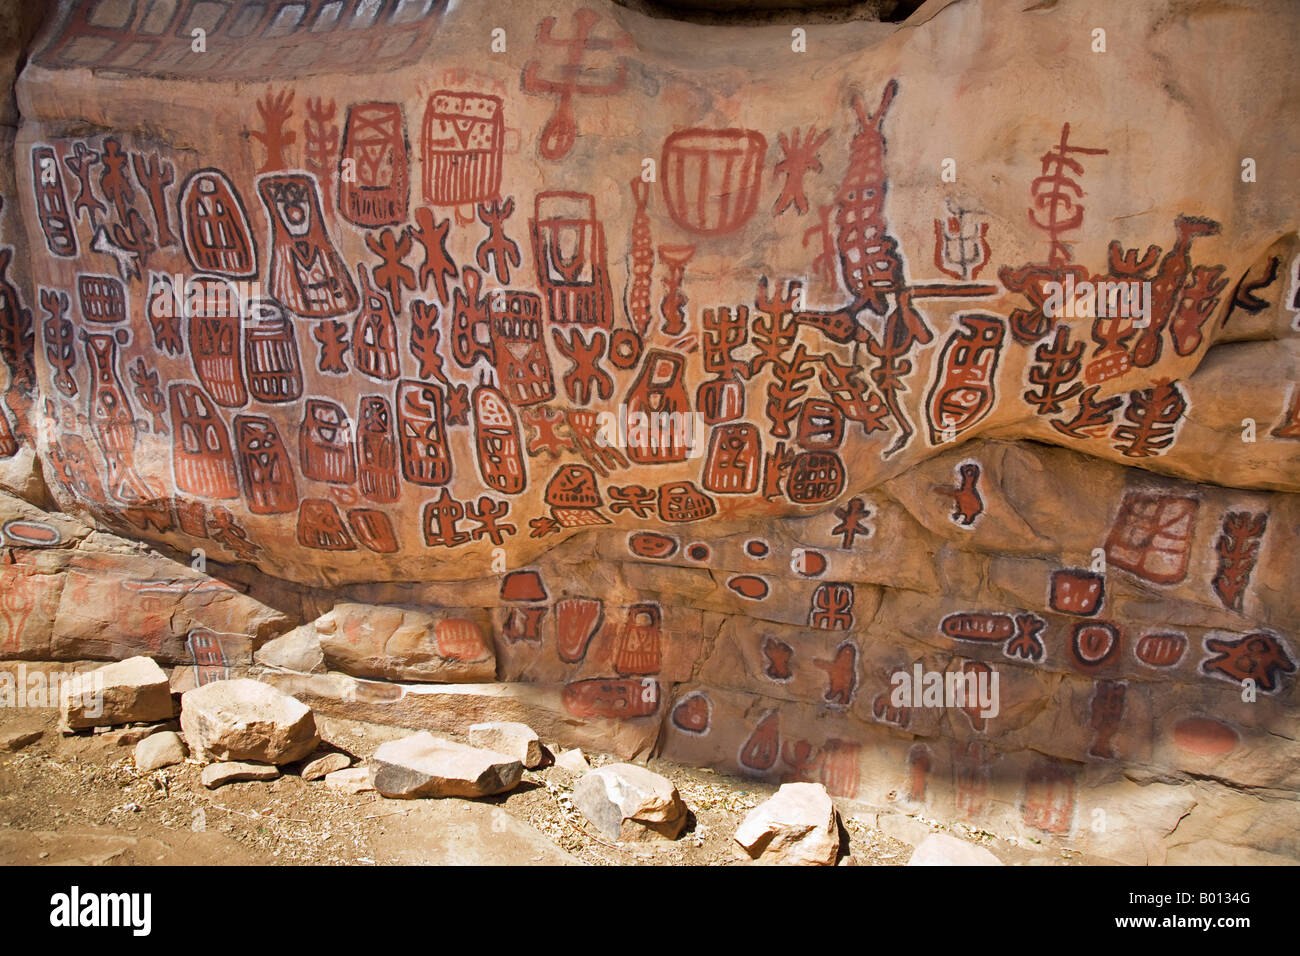 Mali, Paese Dogon. Una grotta decorata parete presso l'attraente villaggio Dogon di Songho sulla sommità della scarpata Bandiagara. Foto Stock